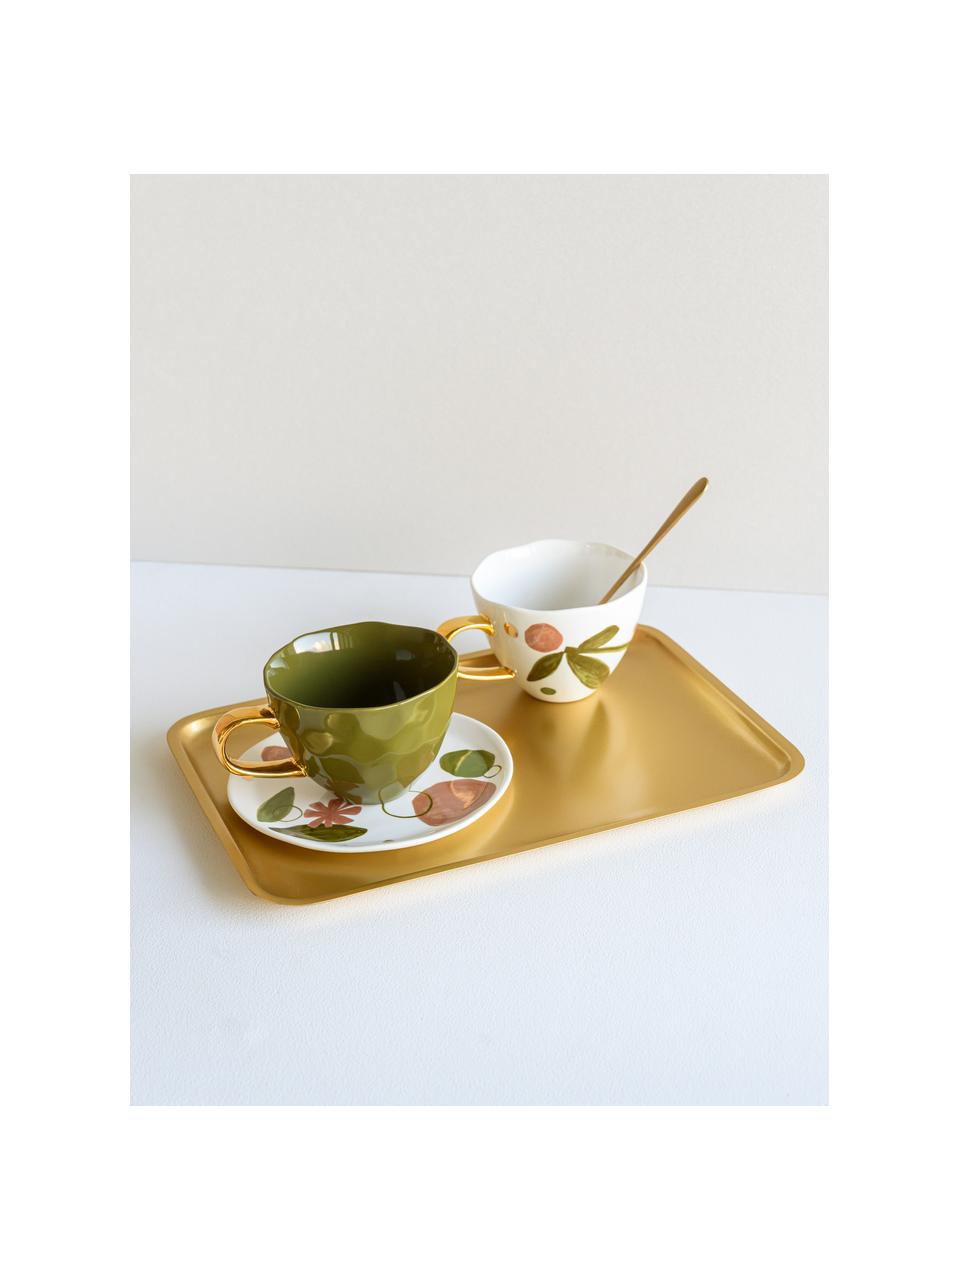 Malovaný snídaňový talíř Expressive, Bílá. růžová, zelená, zlatá